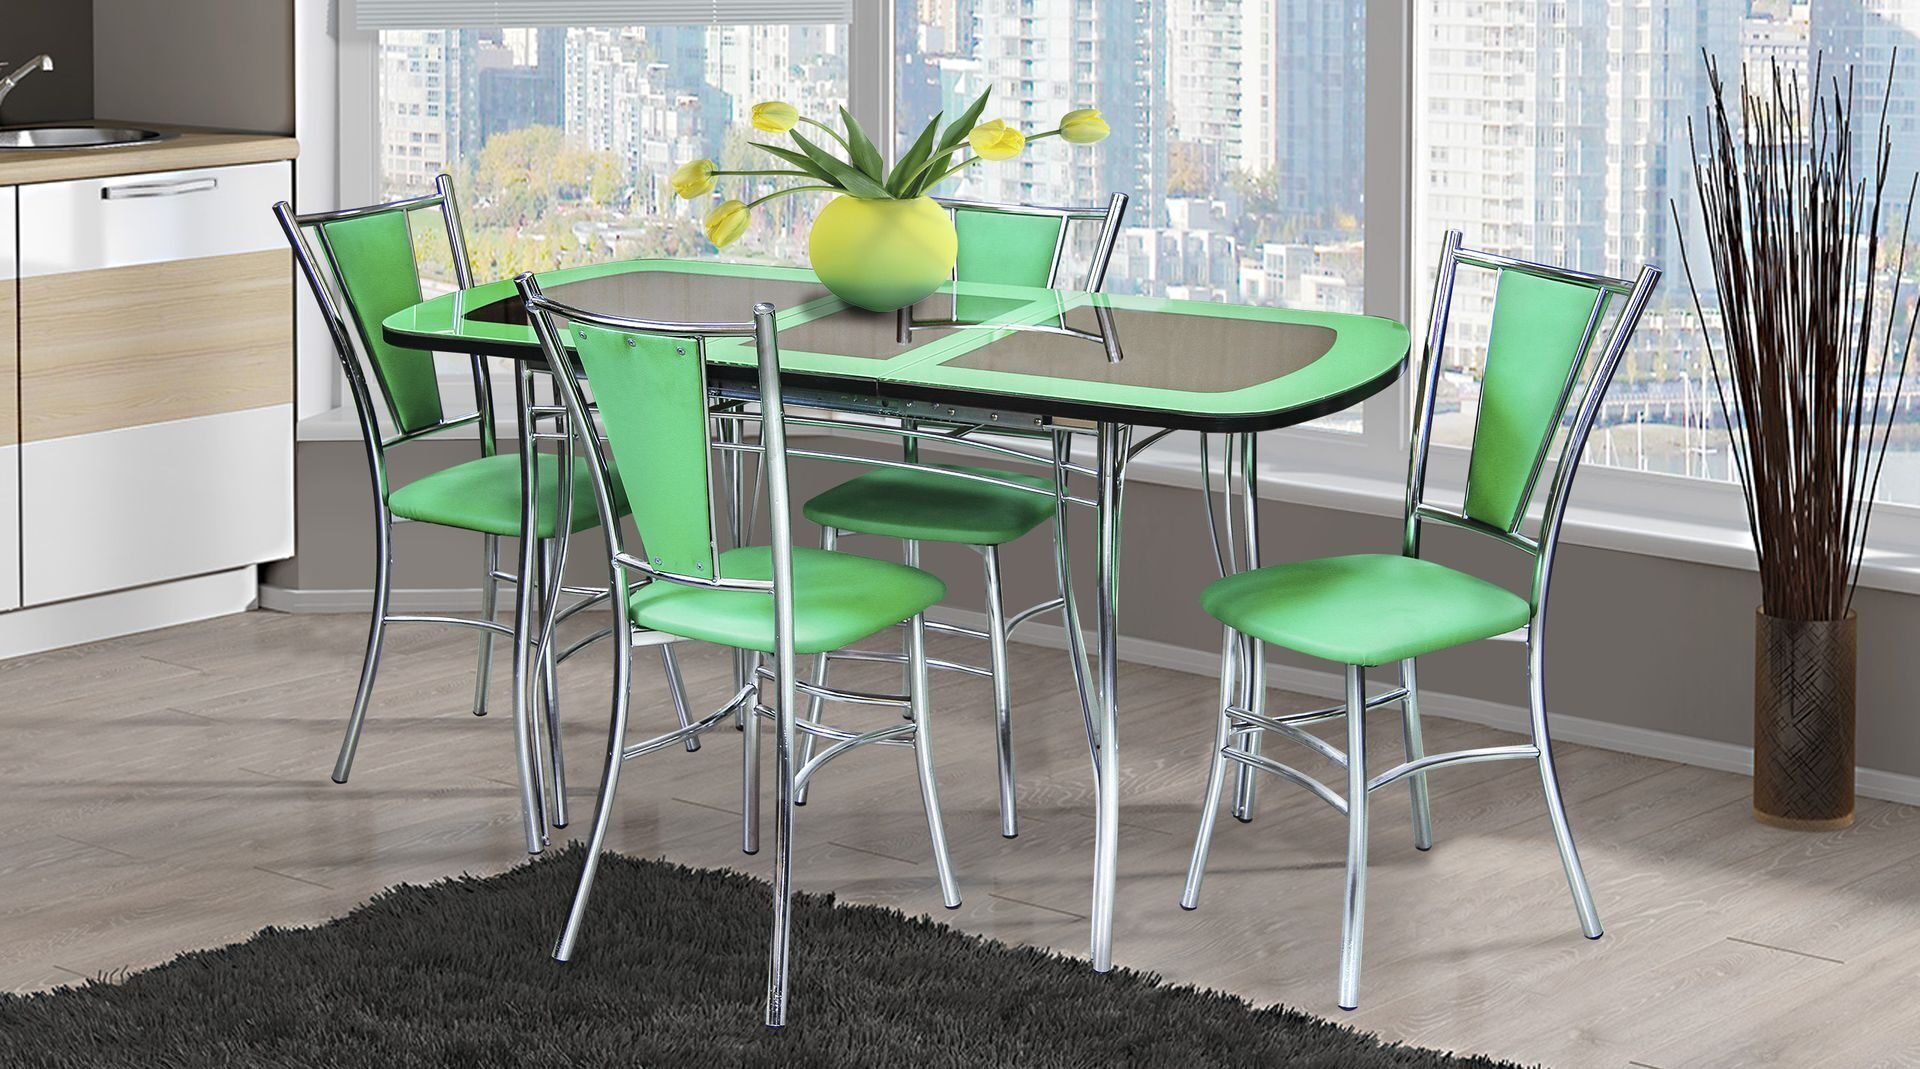 Кухонный комплект стол и стулья. Стол обеденный HMD 2018 tri Dining w/ Brass Plate. Столы и стулья для кухни. Кухонный стол и стулья. Кухня с зелеными стульями.